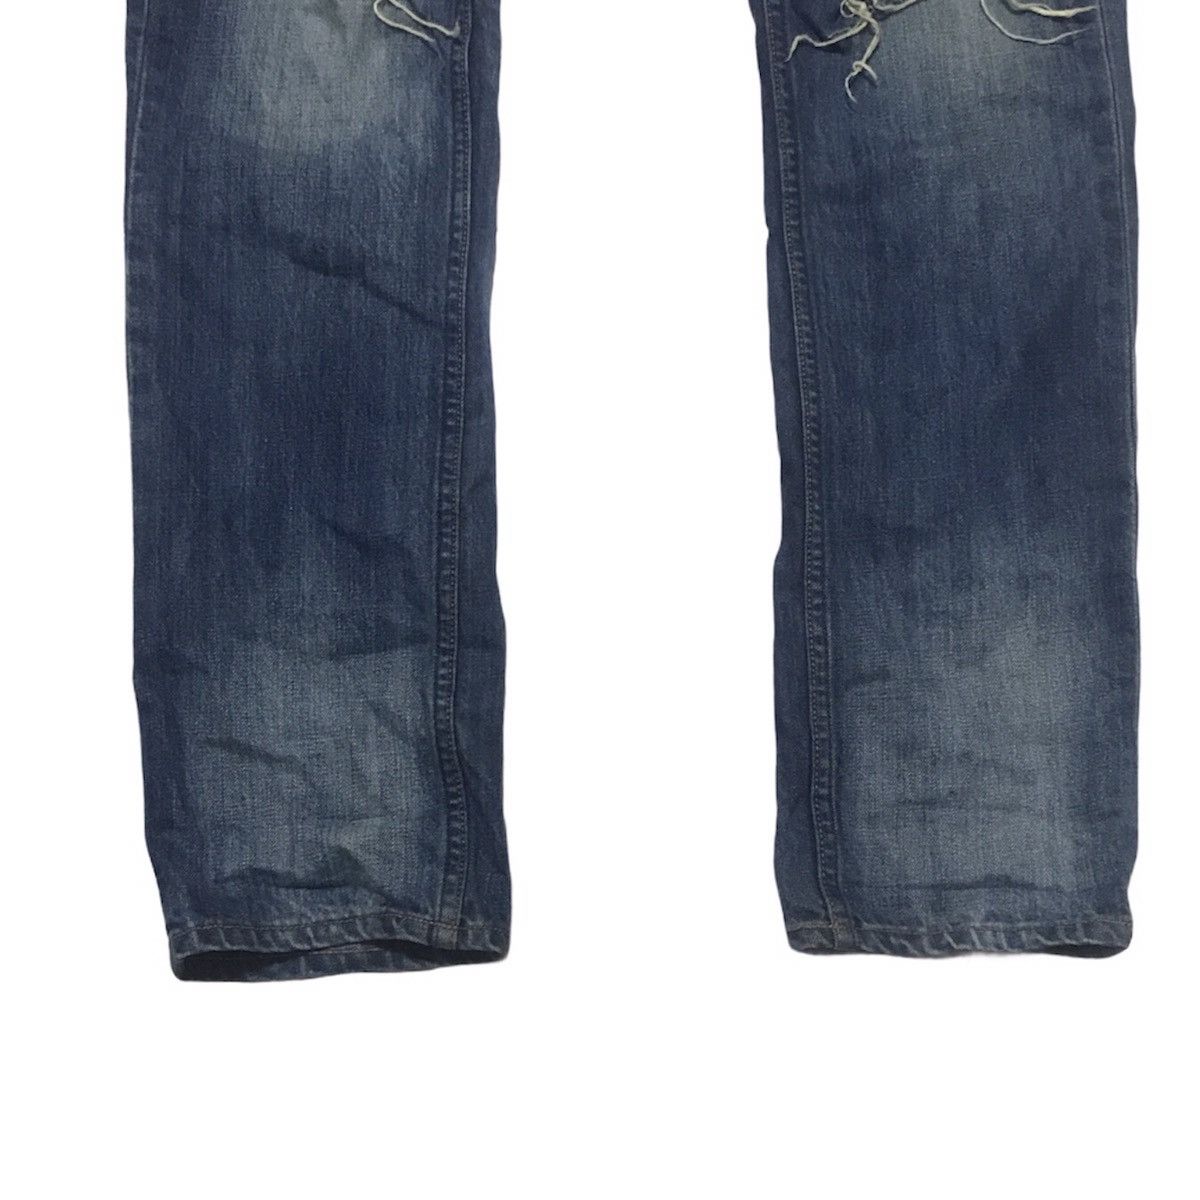 N(N) Number Nine Denim Distressed jeans - 4